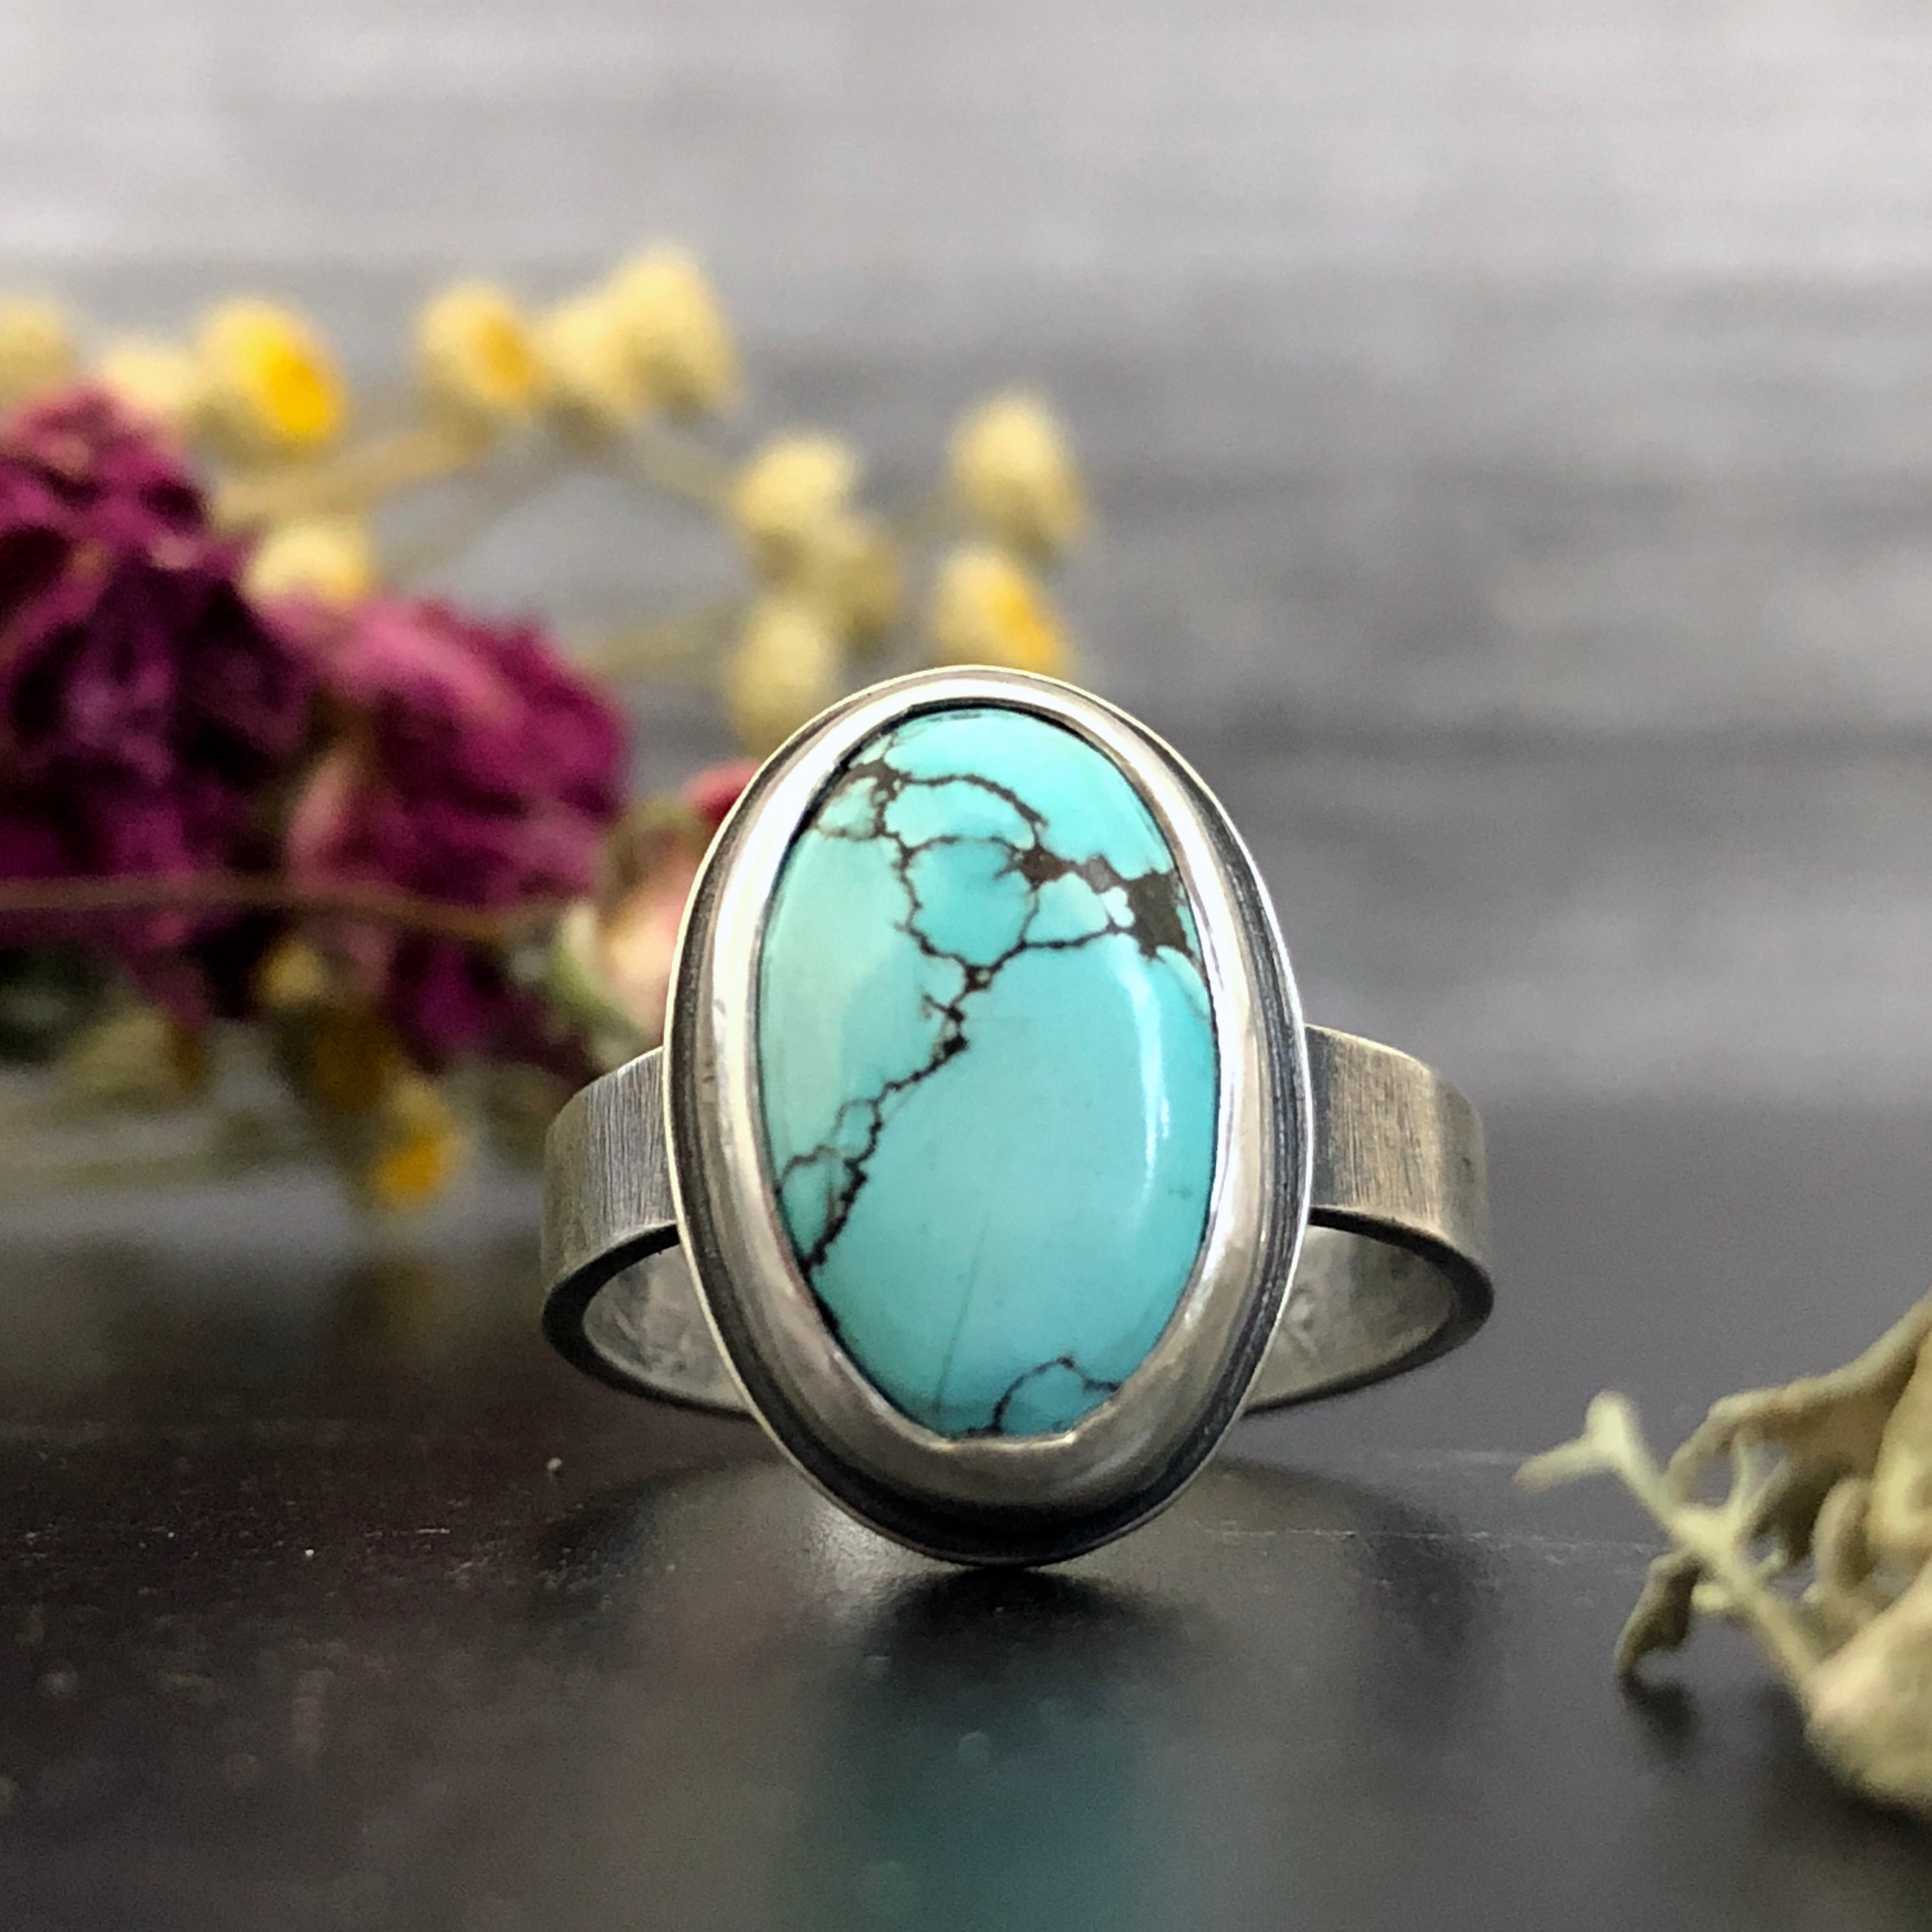 Blue Turquoise and Diamond Engagement Ring Set Kite Lozenge Shape